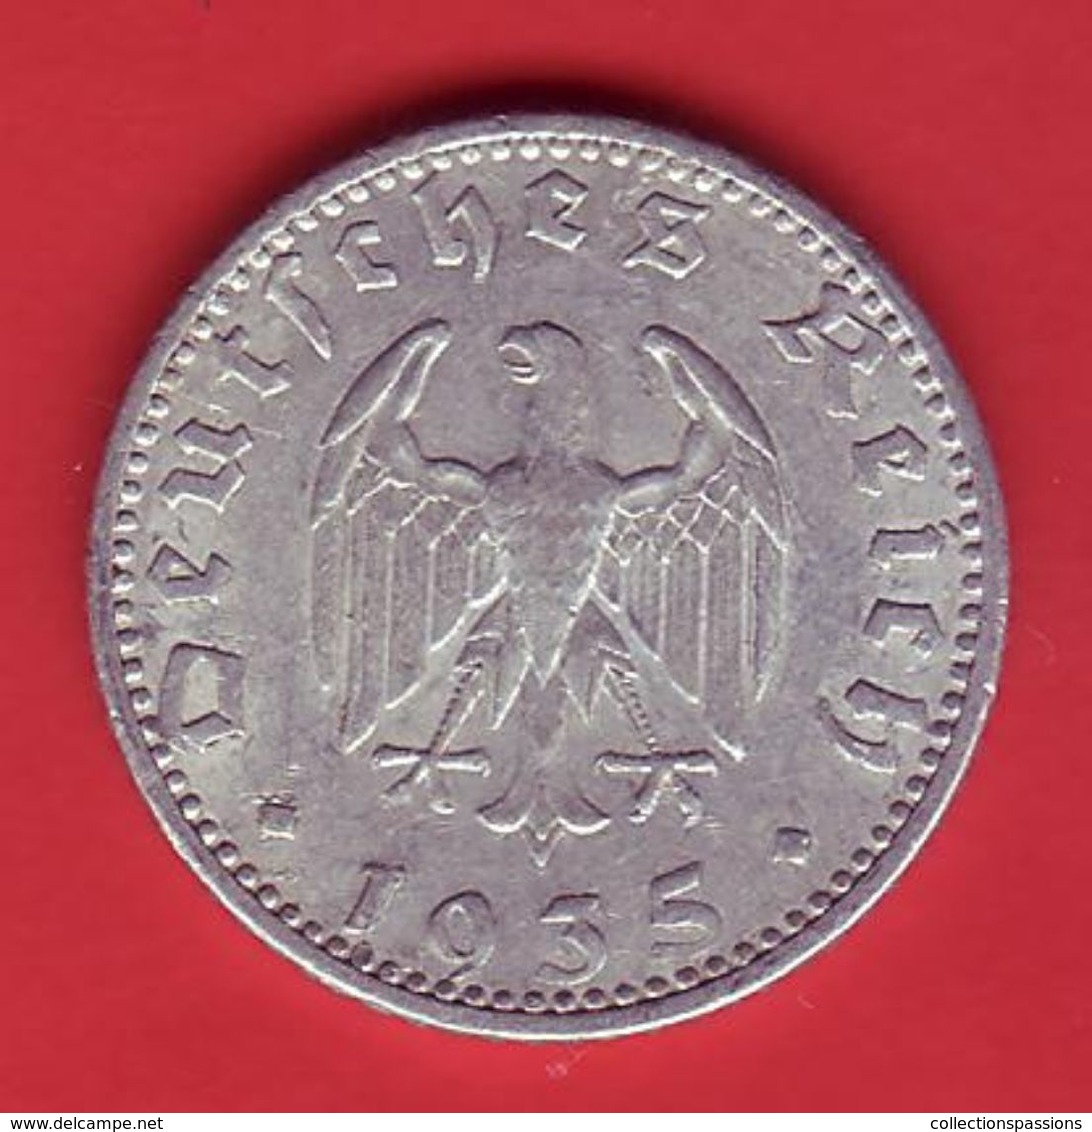 - ALLEMAGNE - 50 Reichspfennig 1935 - - 50 Reichspfennig